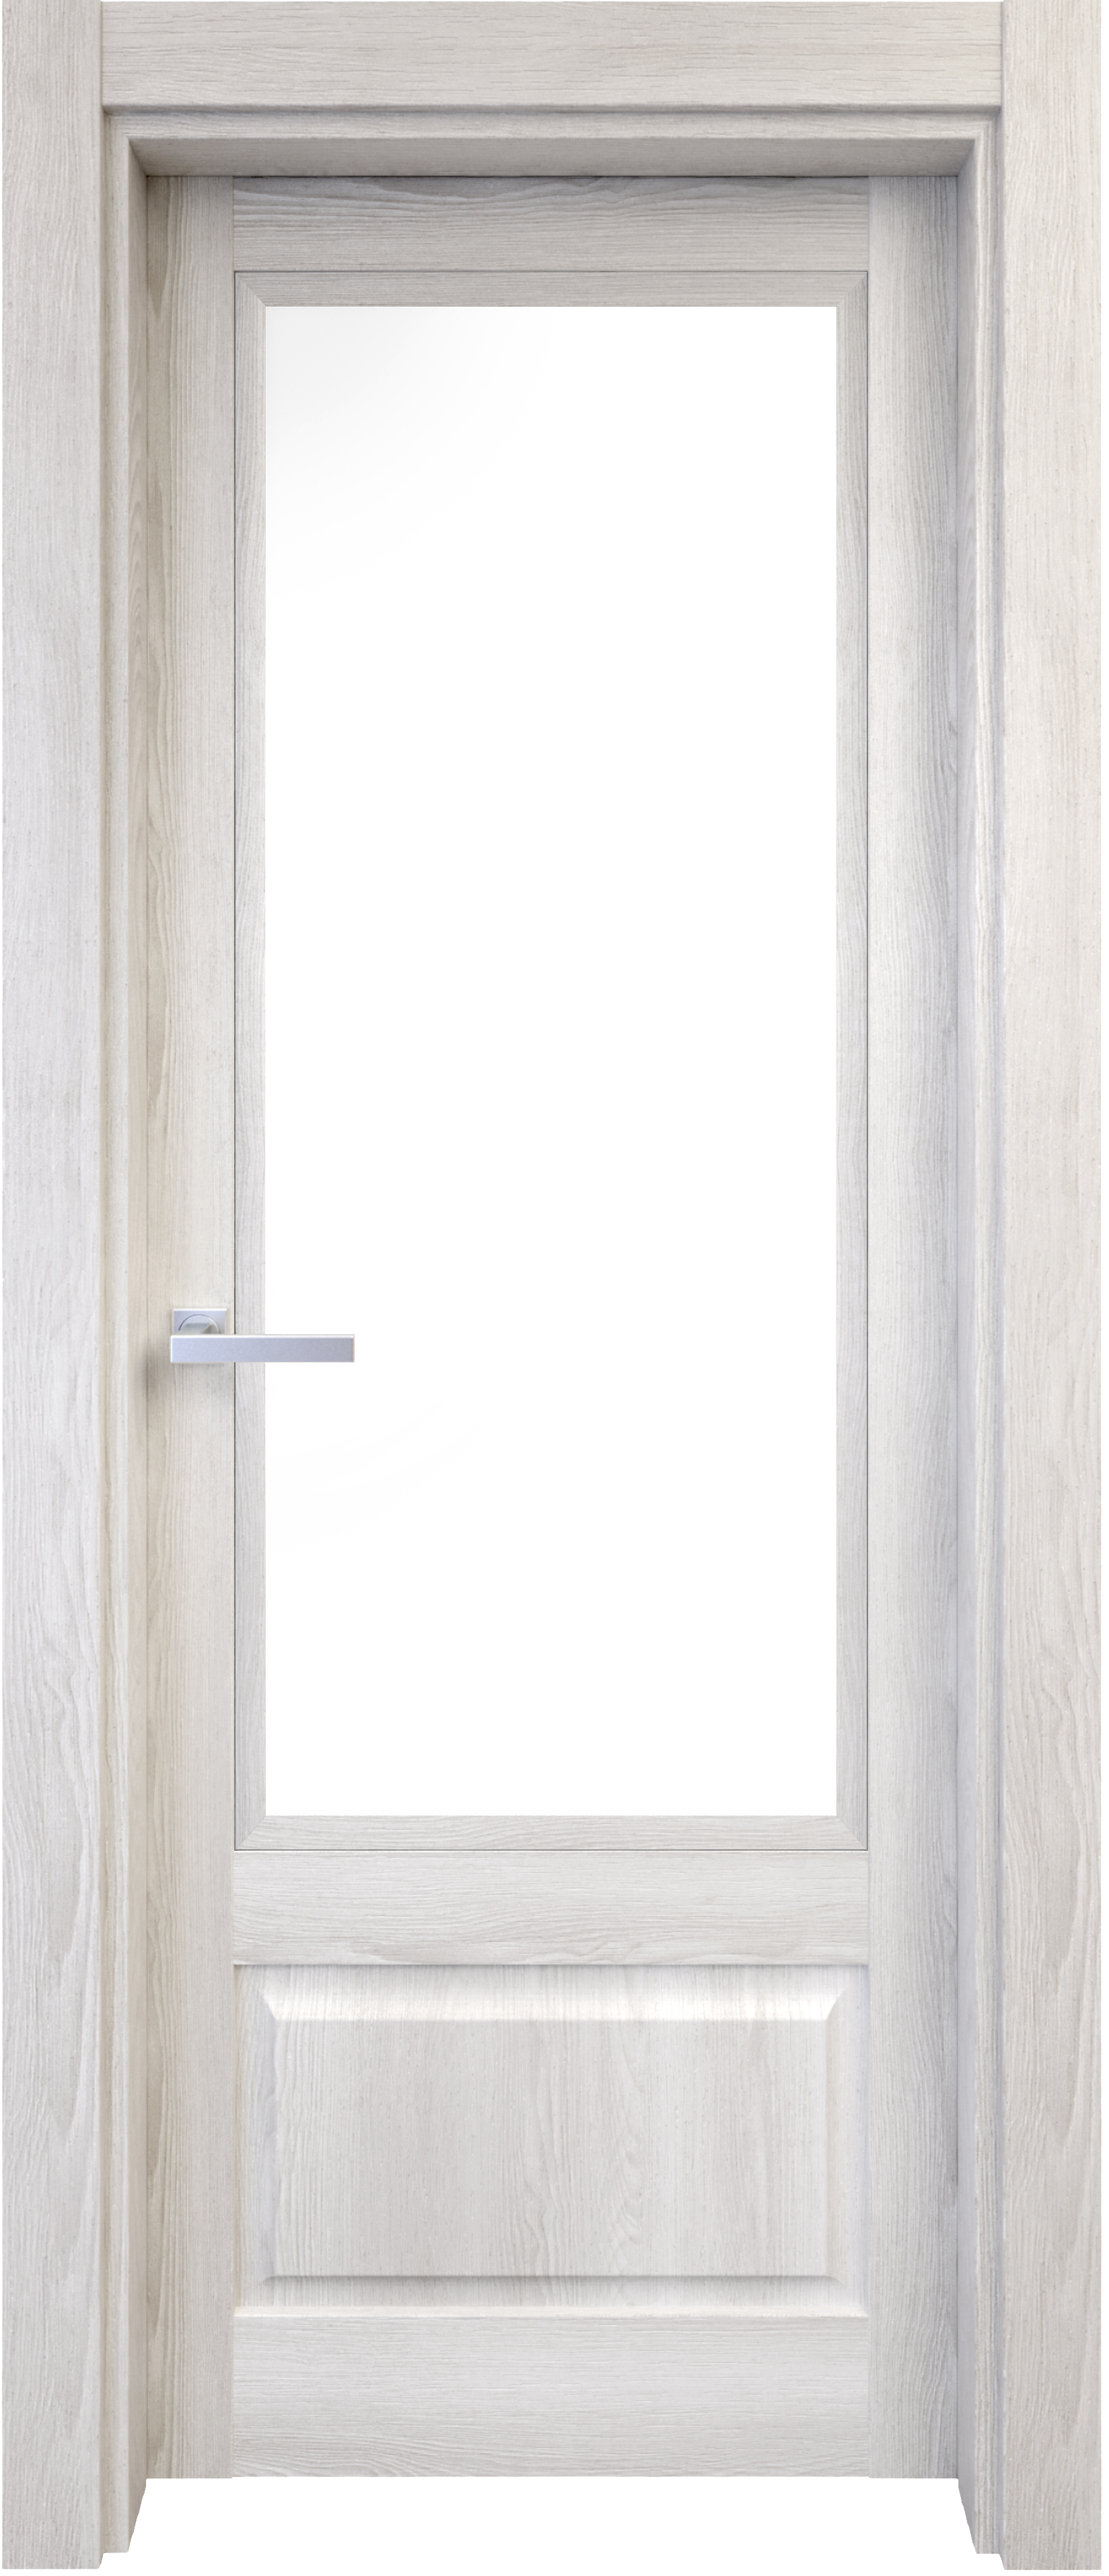 Puerta abatible sofia blanca line plus con cristal blanco izquierda de 82.5